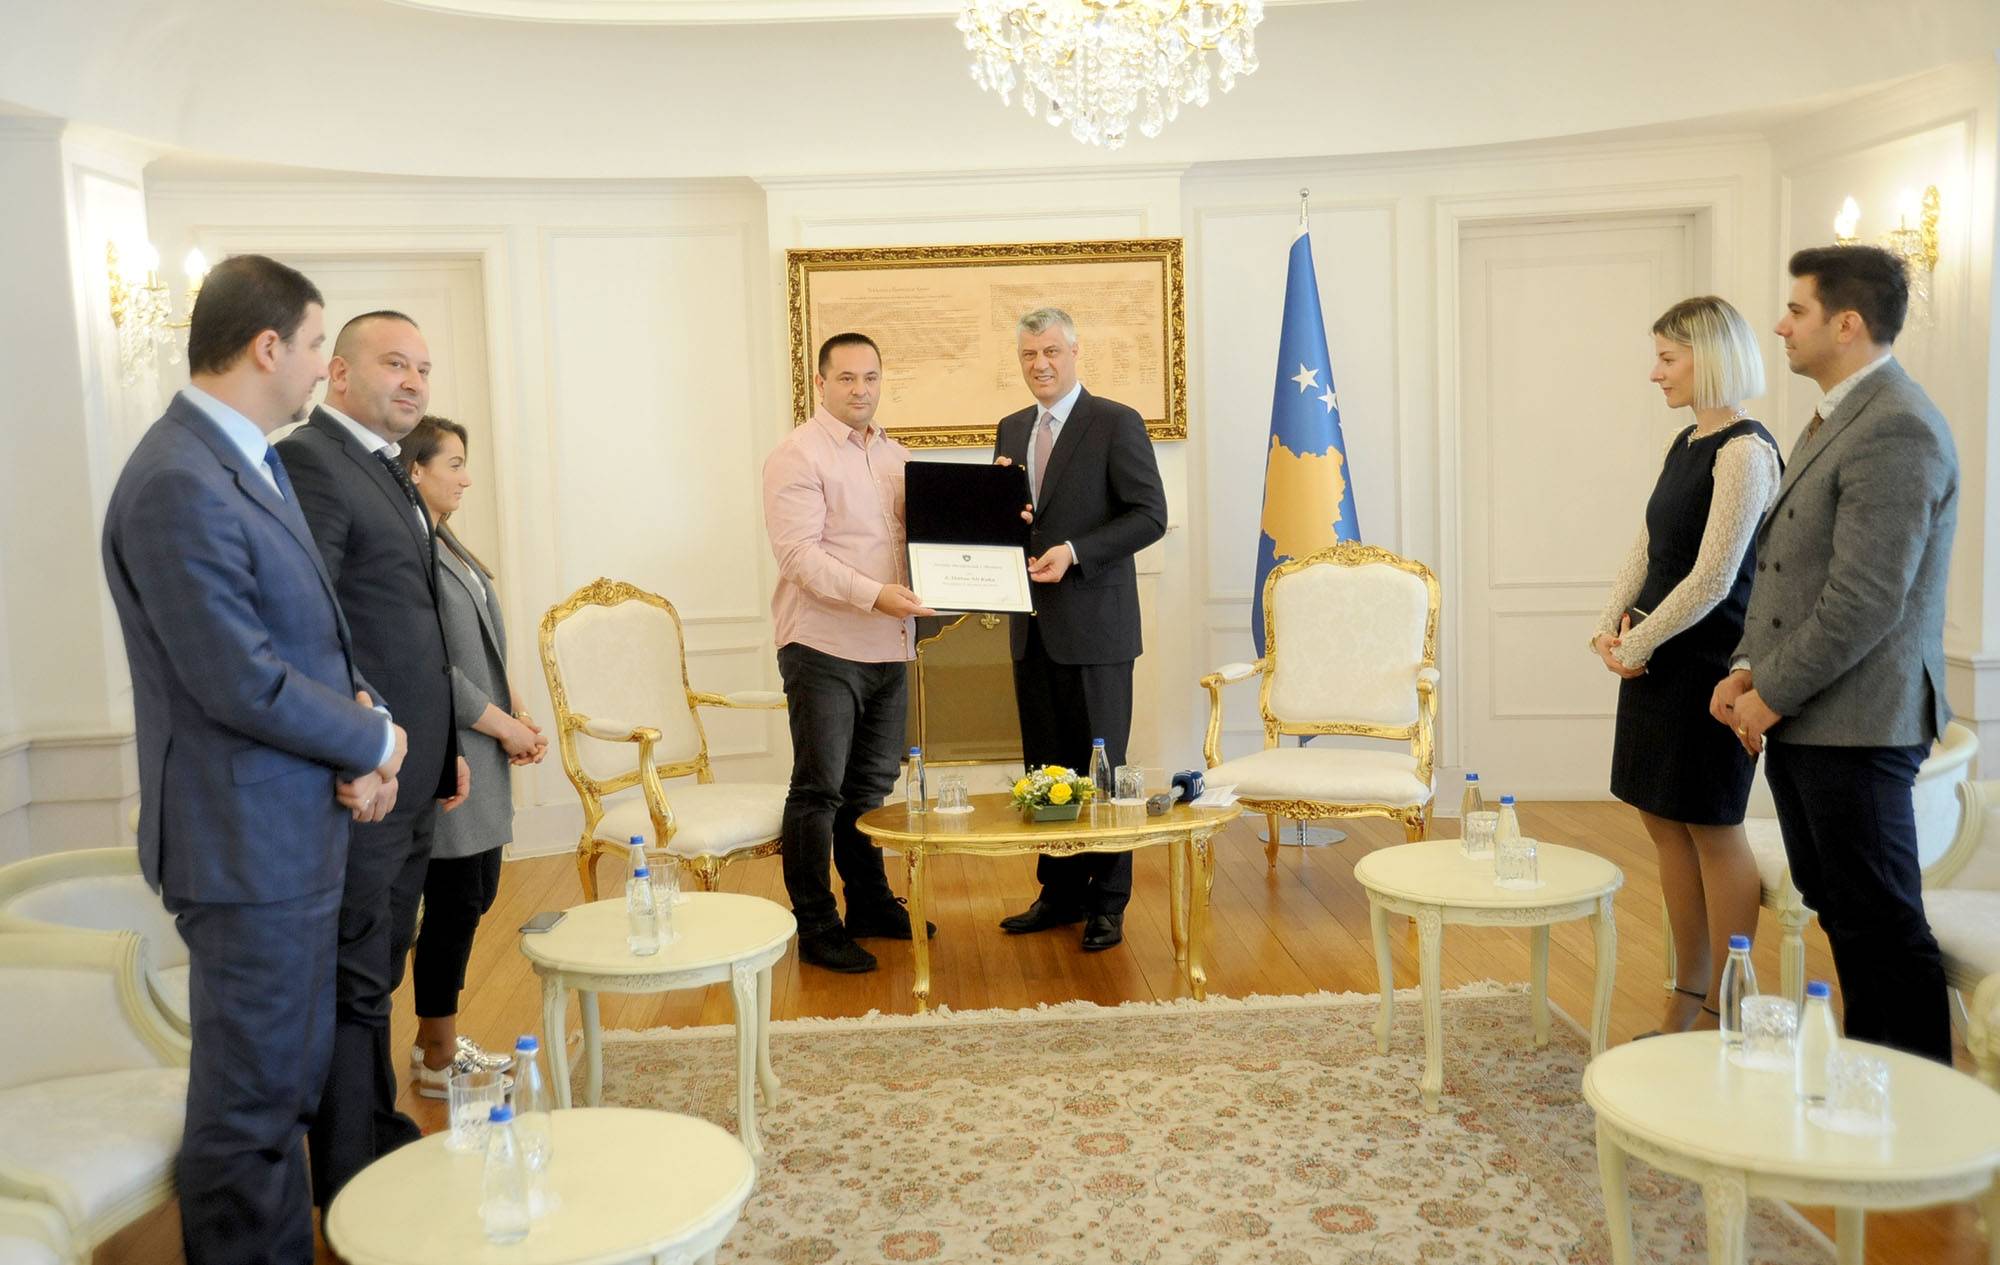 Presidenti Thaçi i ndau Medaljen Presidenciale të Meritave, Driton Kukës